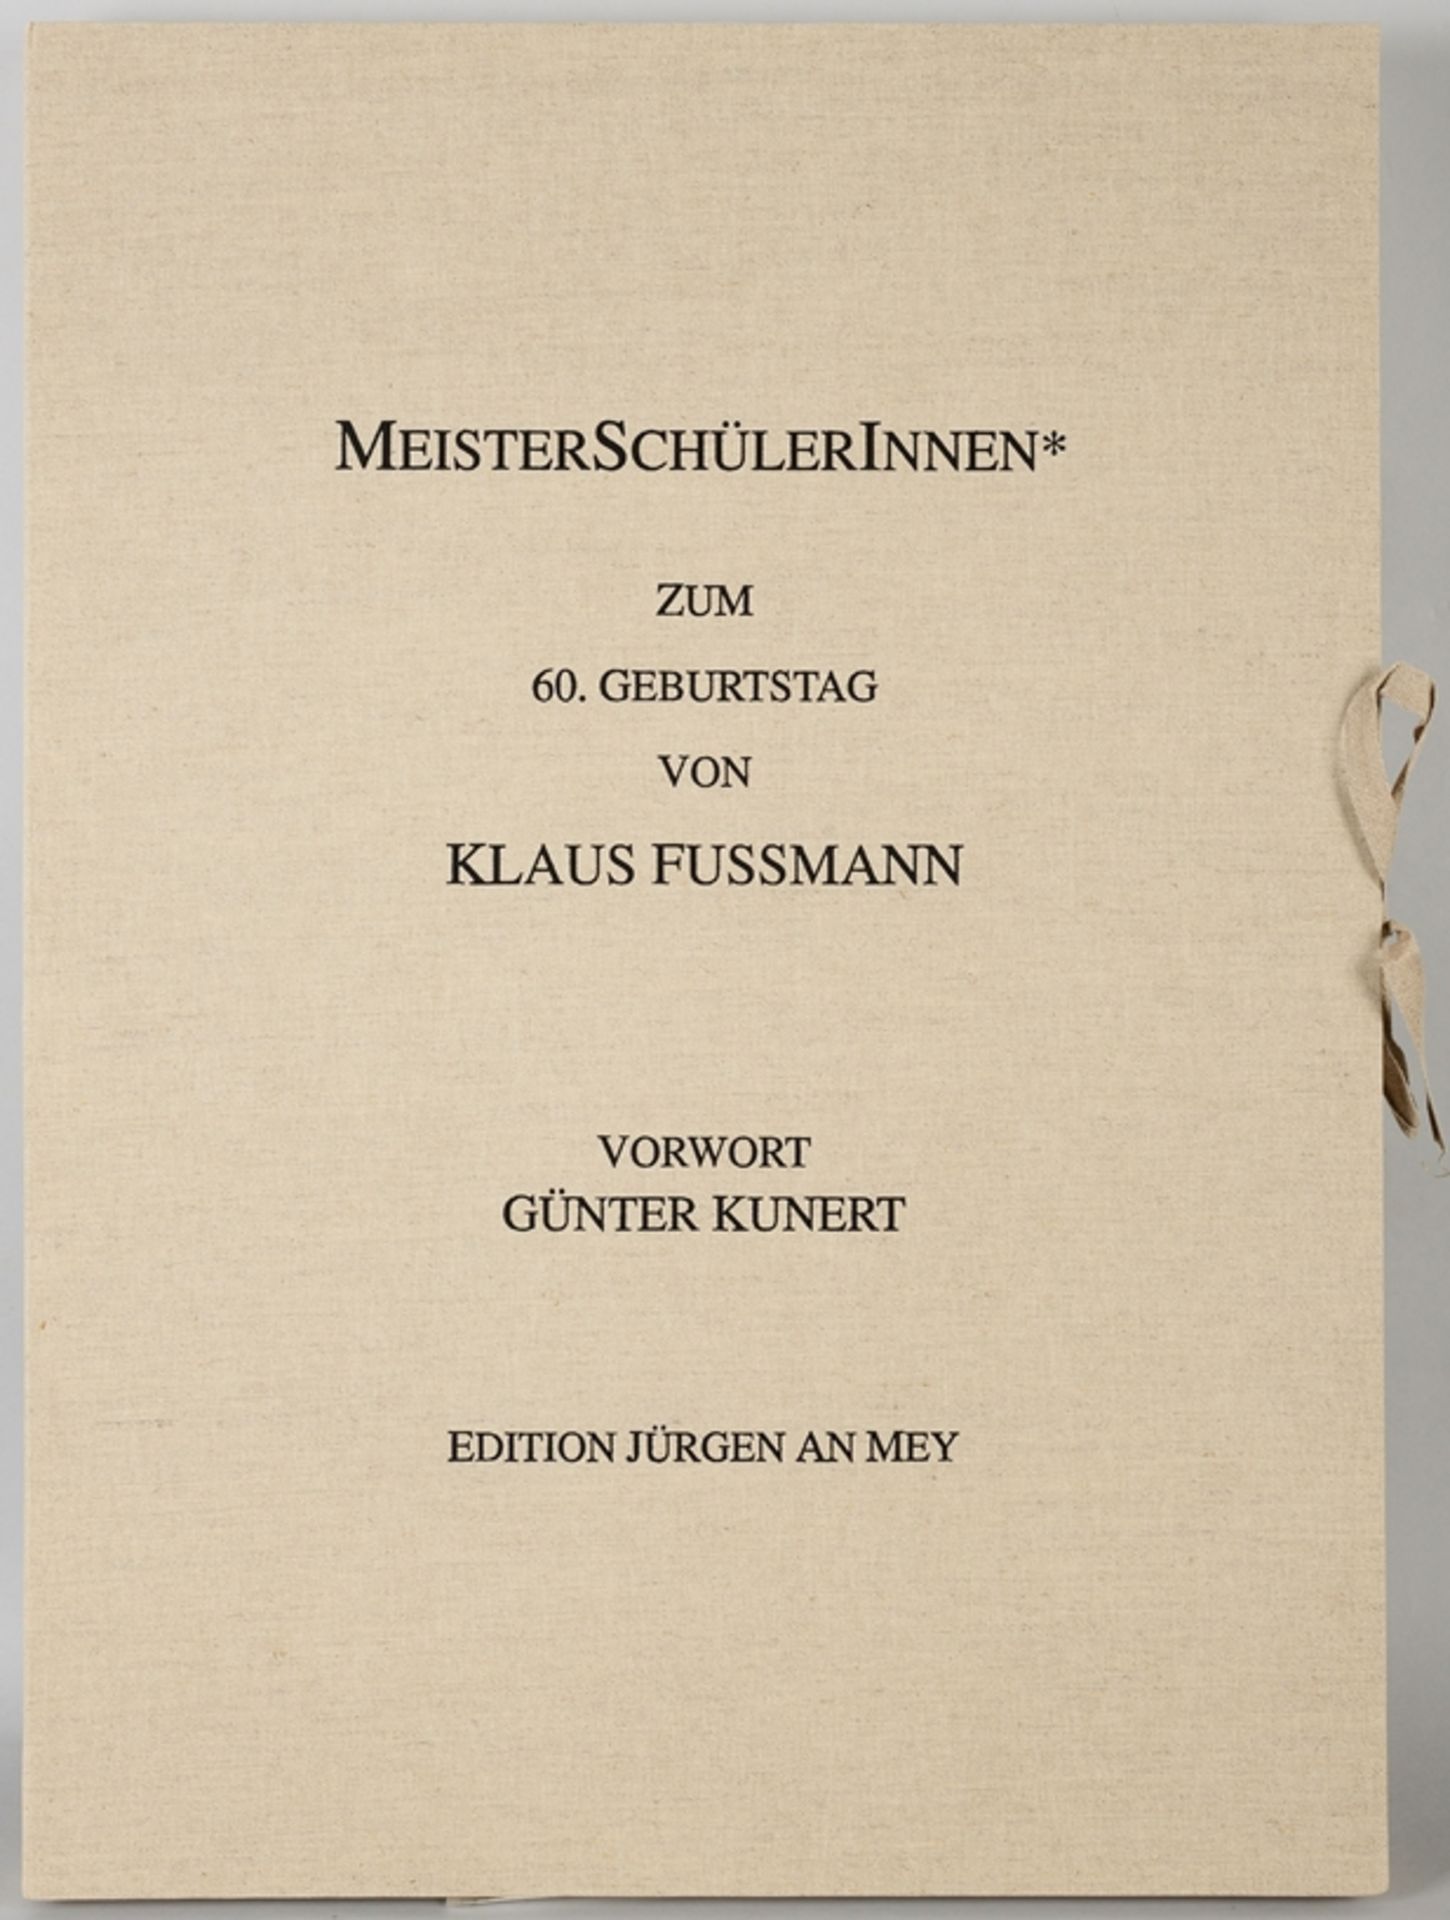 MeisterSchülerInnen* Zum 60. Geburtstag von Klaus Fußmann, 1998